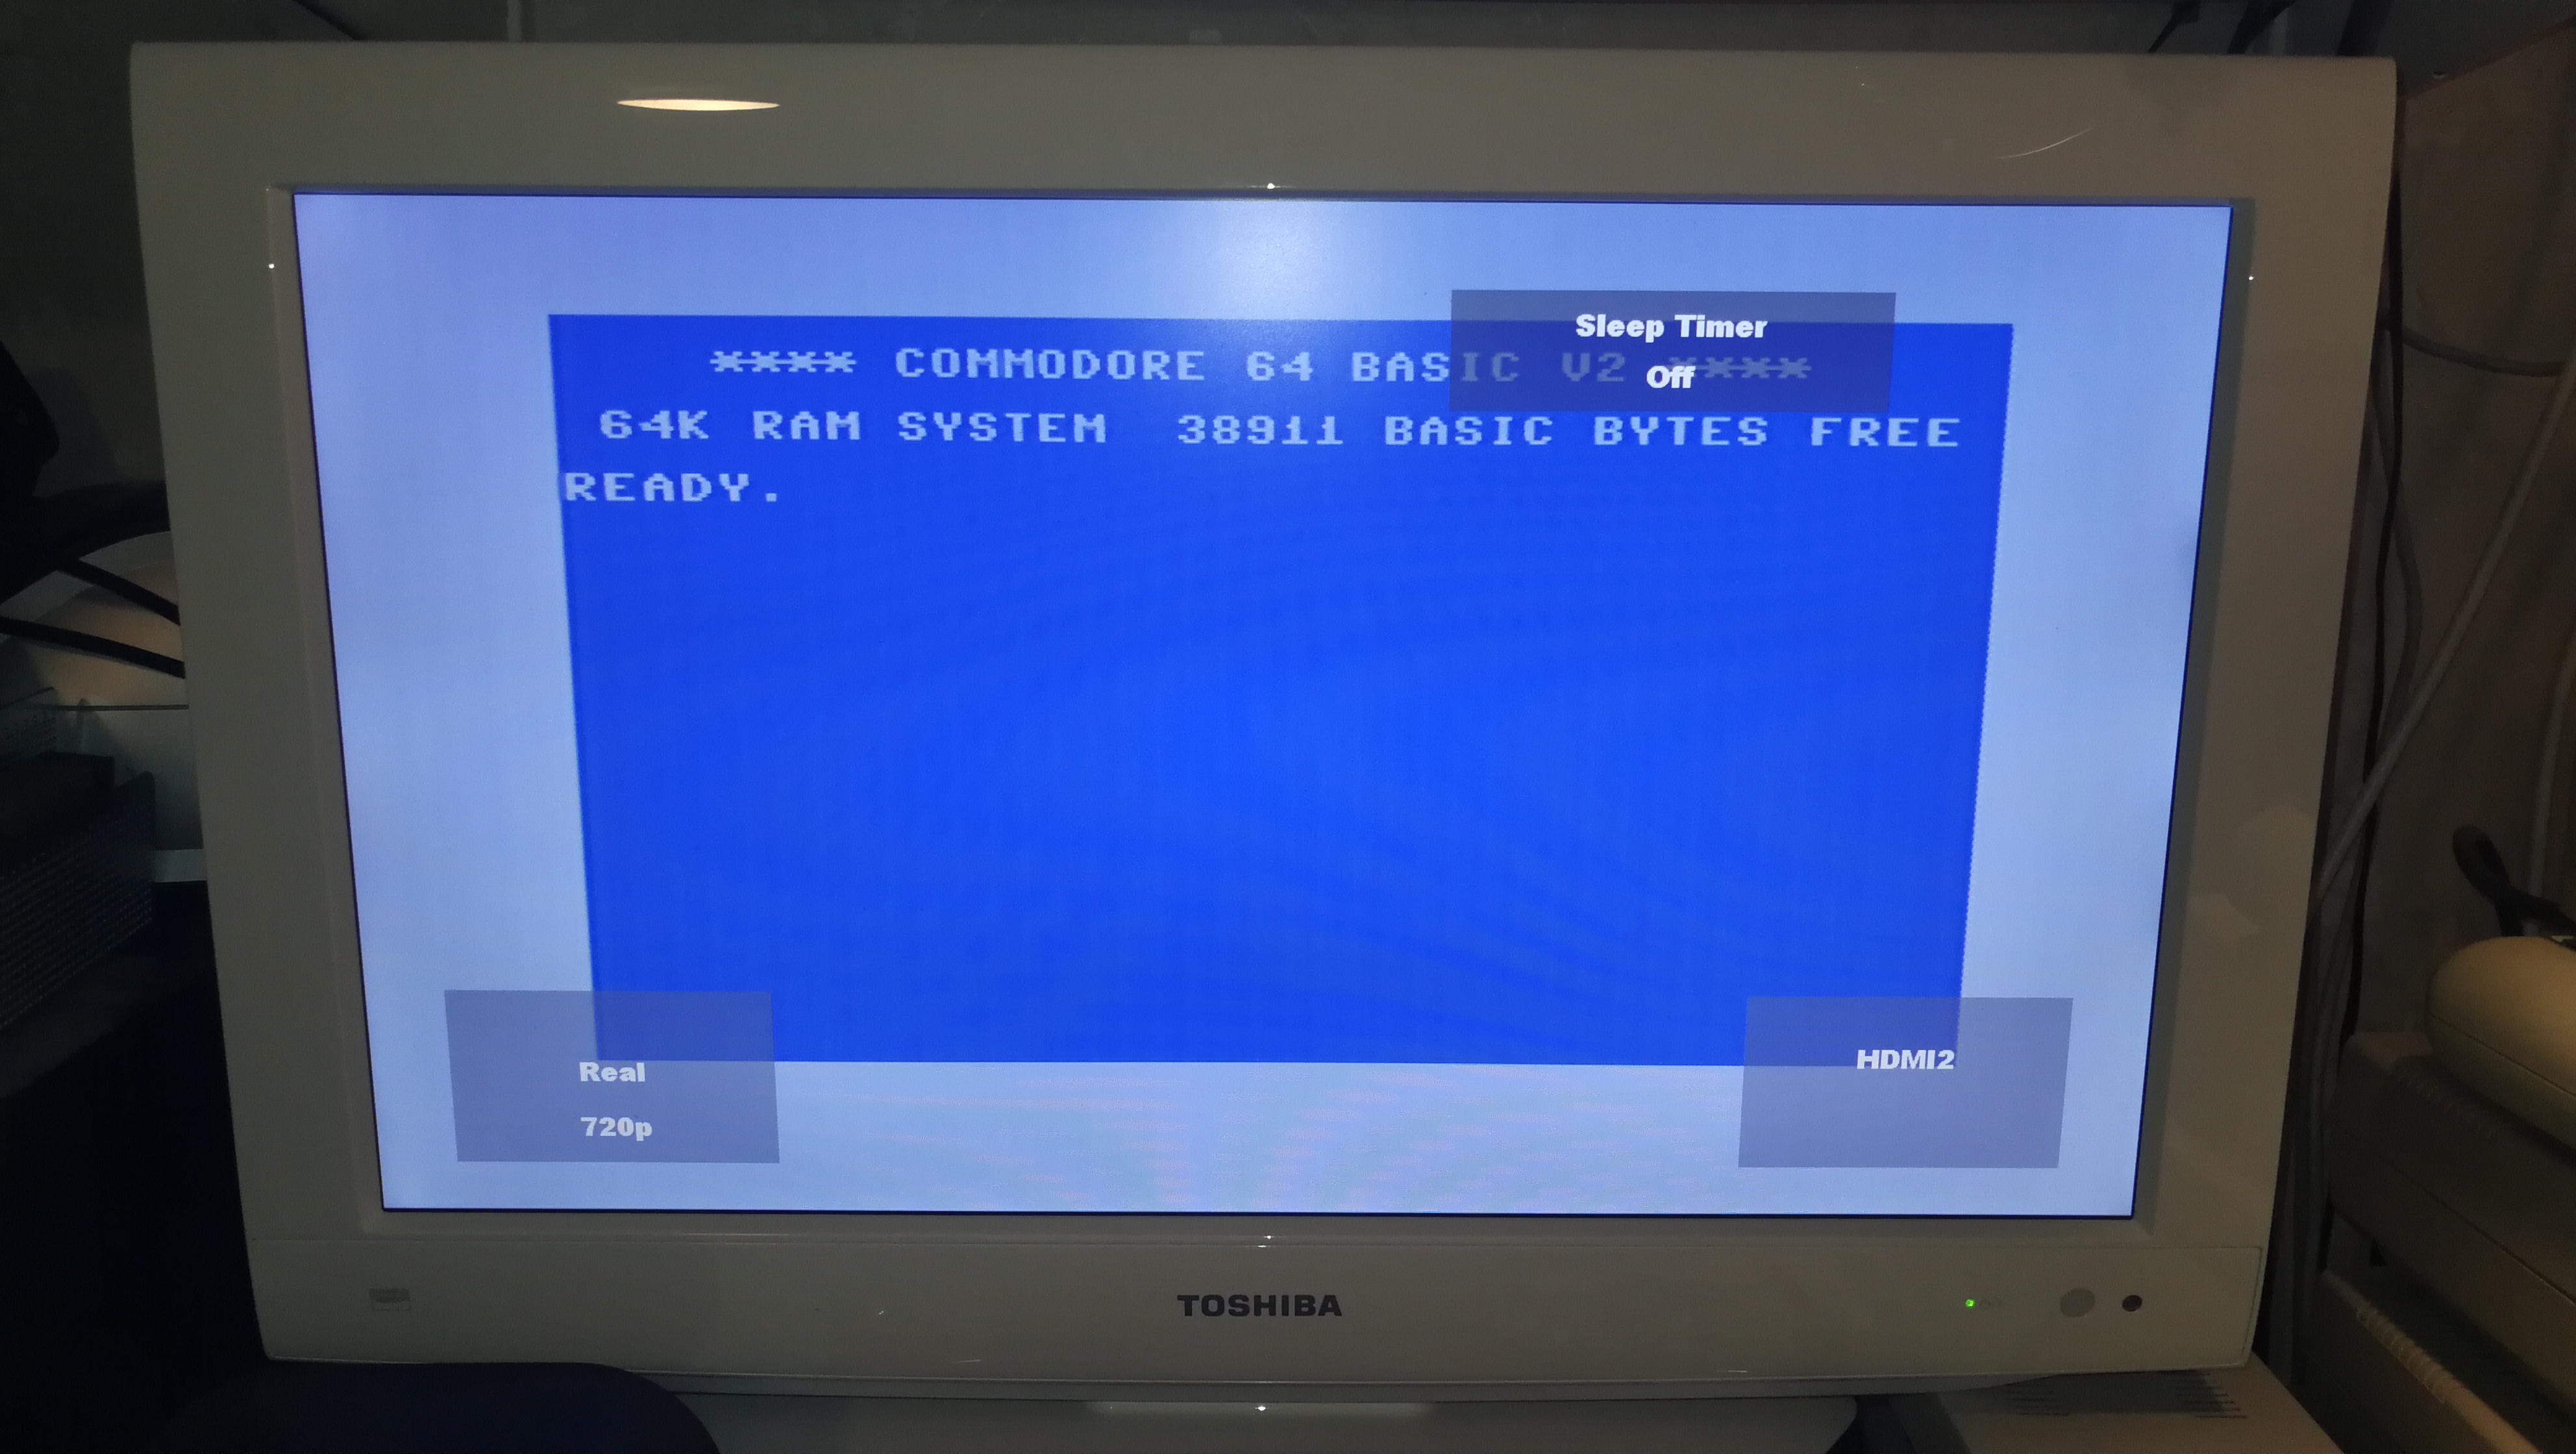 Commodore 64 Video over - a - Lyonsden Blog